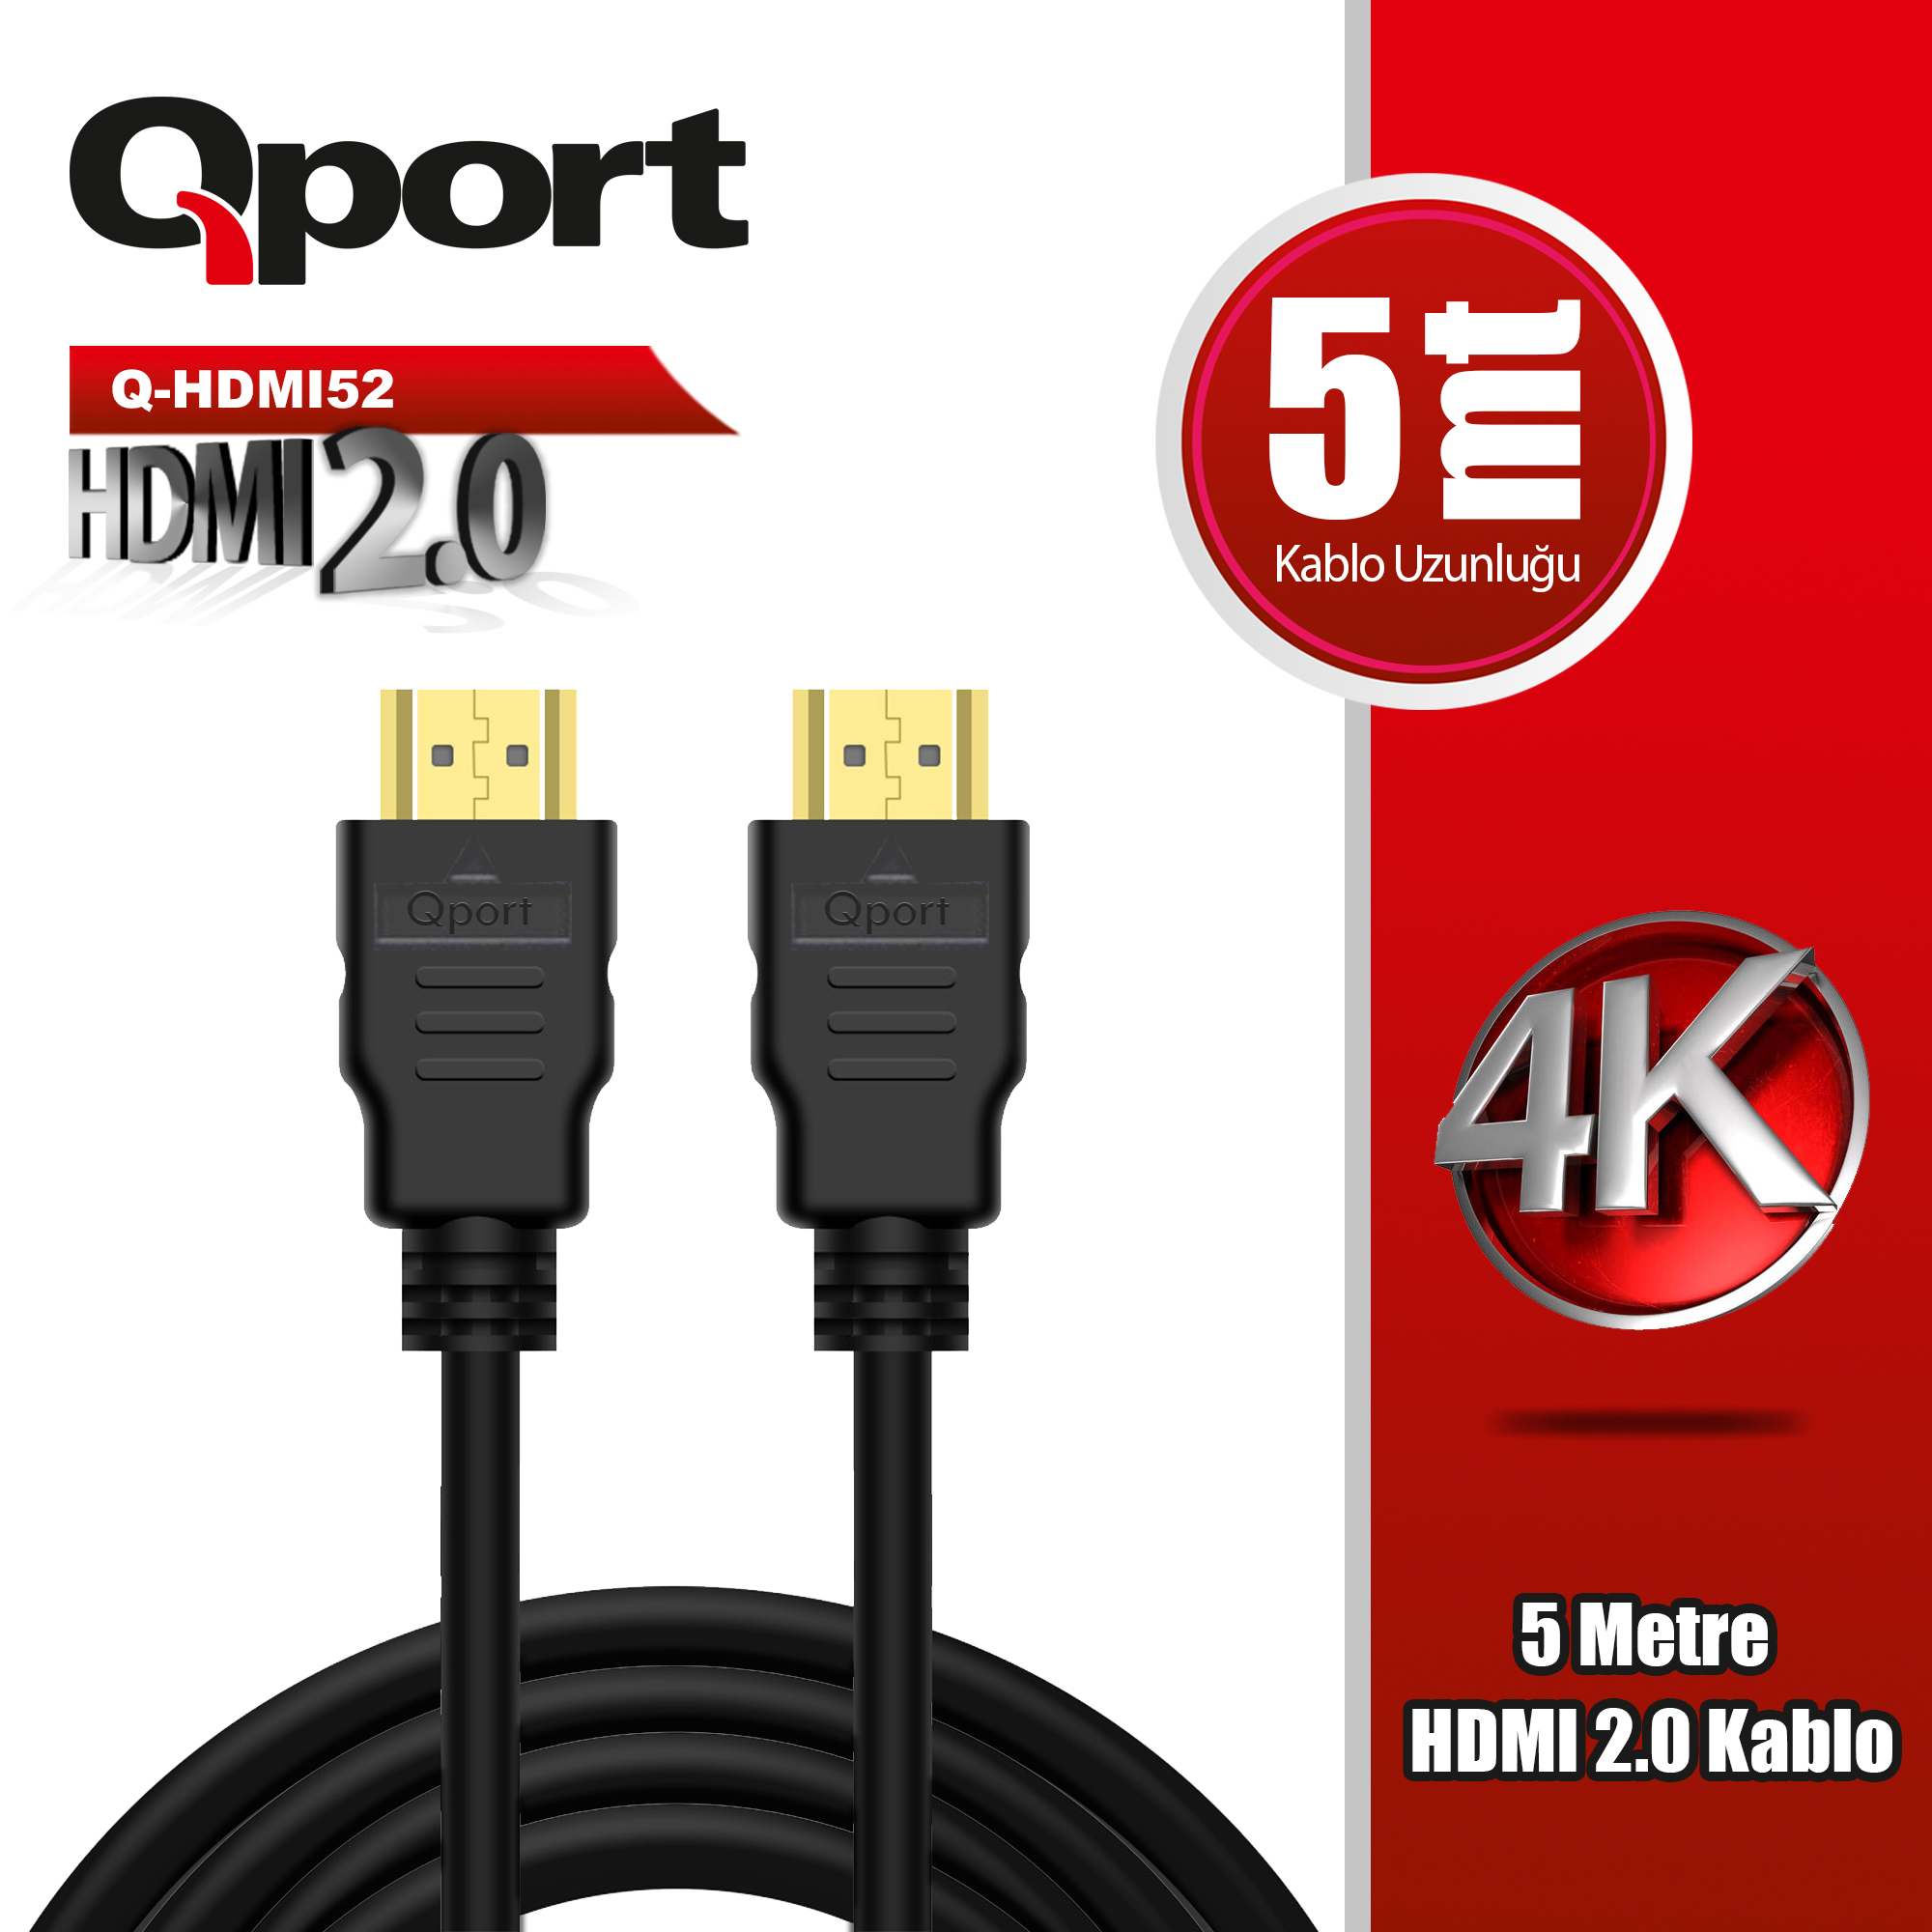 QPORT (Q-HDMI52) ALTIN UCLU 5M 4K HDMI2.0 KABLO